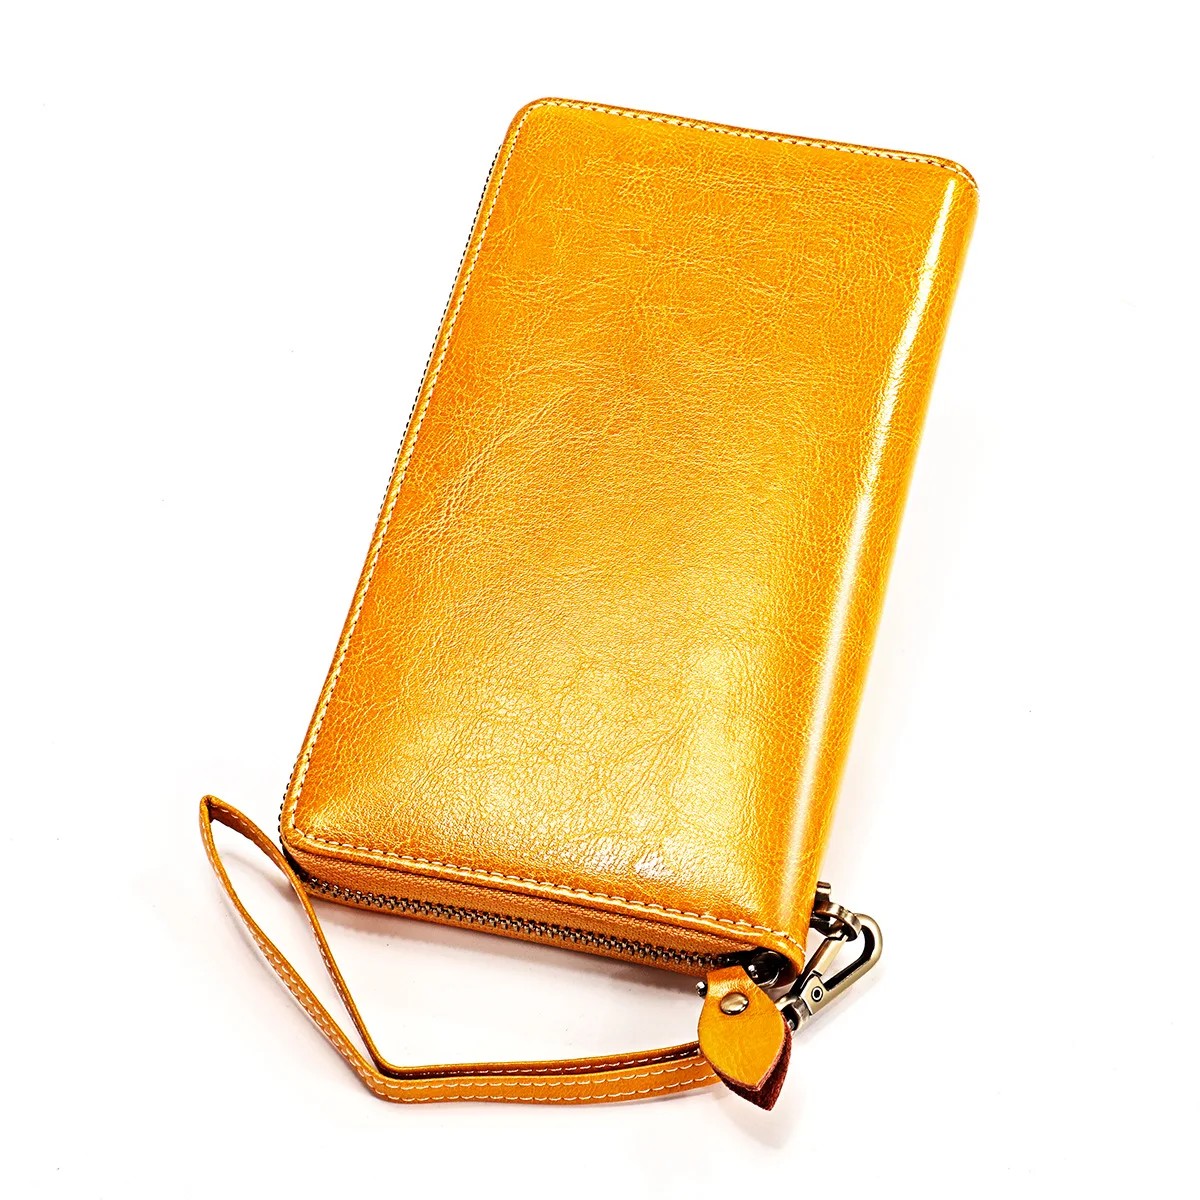 Baellerry кошелек длинный женский кошелек из натуральной кожи держатель для карт женские кошельки на молнии с сумочкой для телефона большой кошелек на запястье Carteira - Цвет: Цвет: желтый